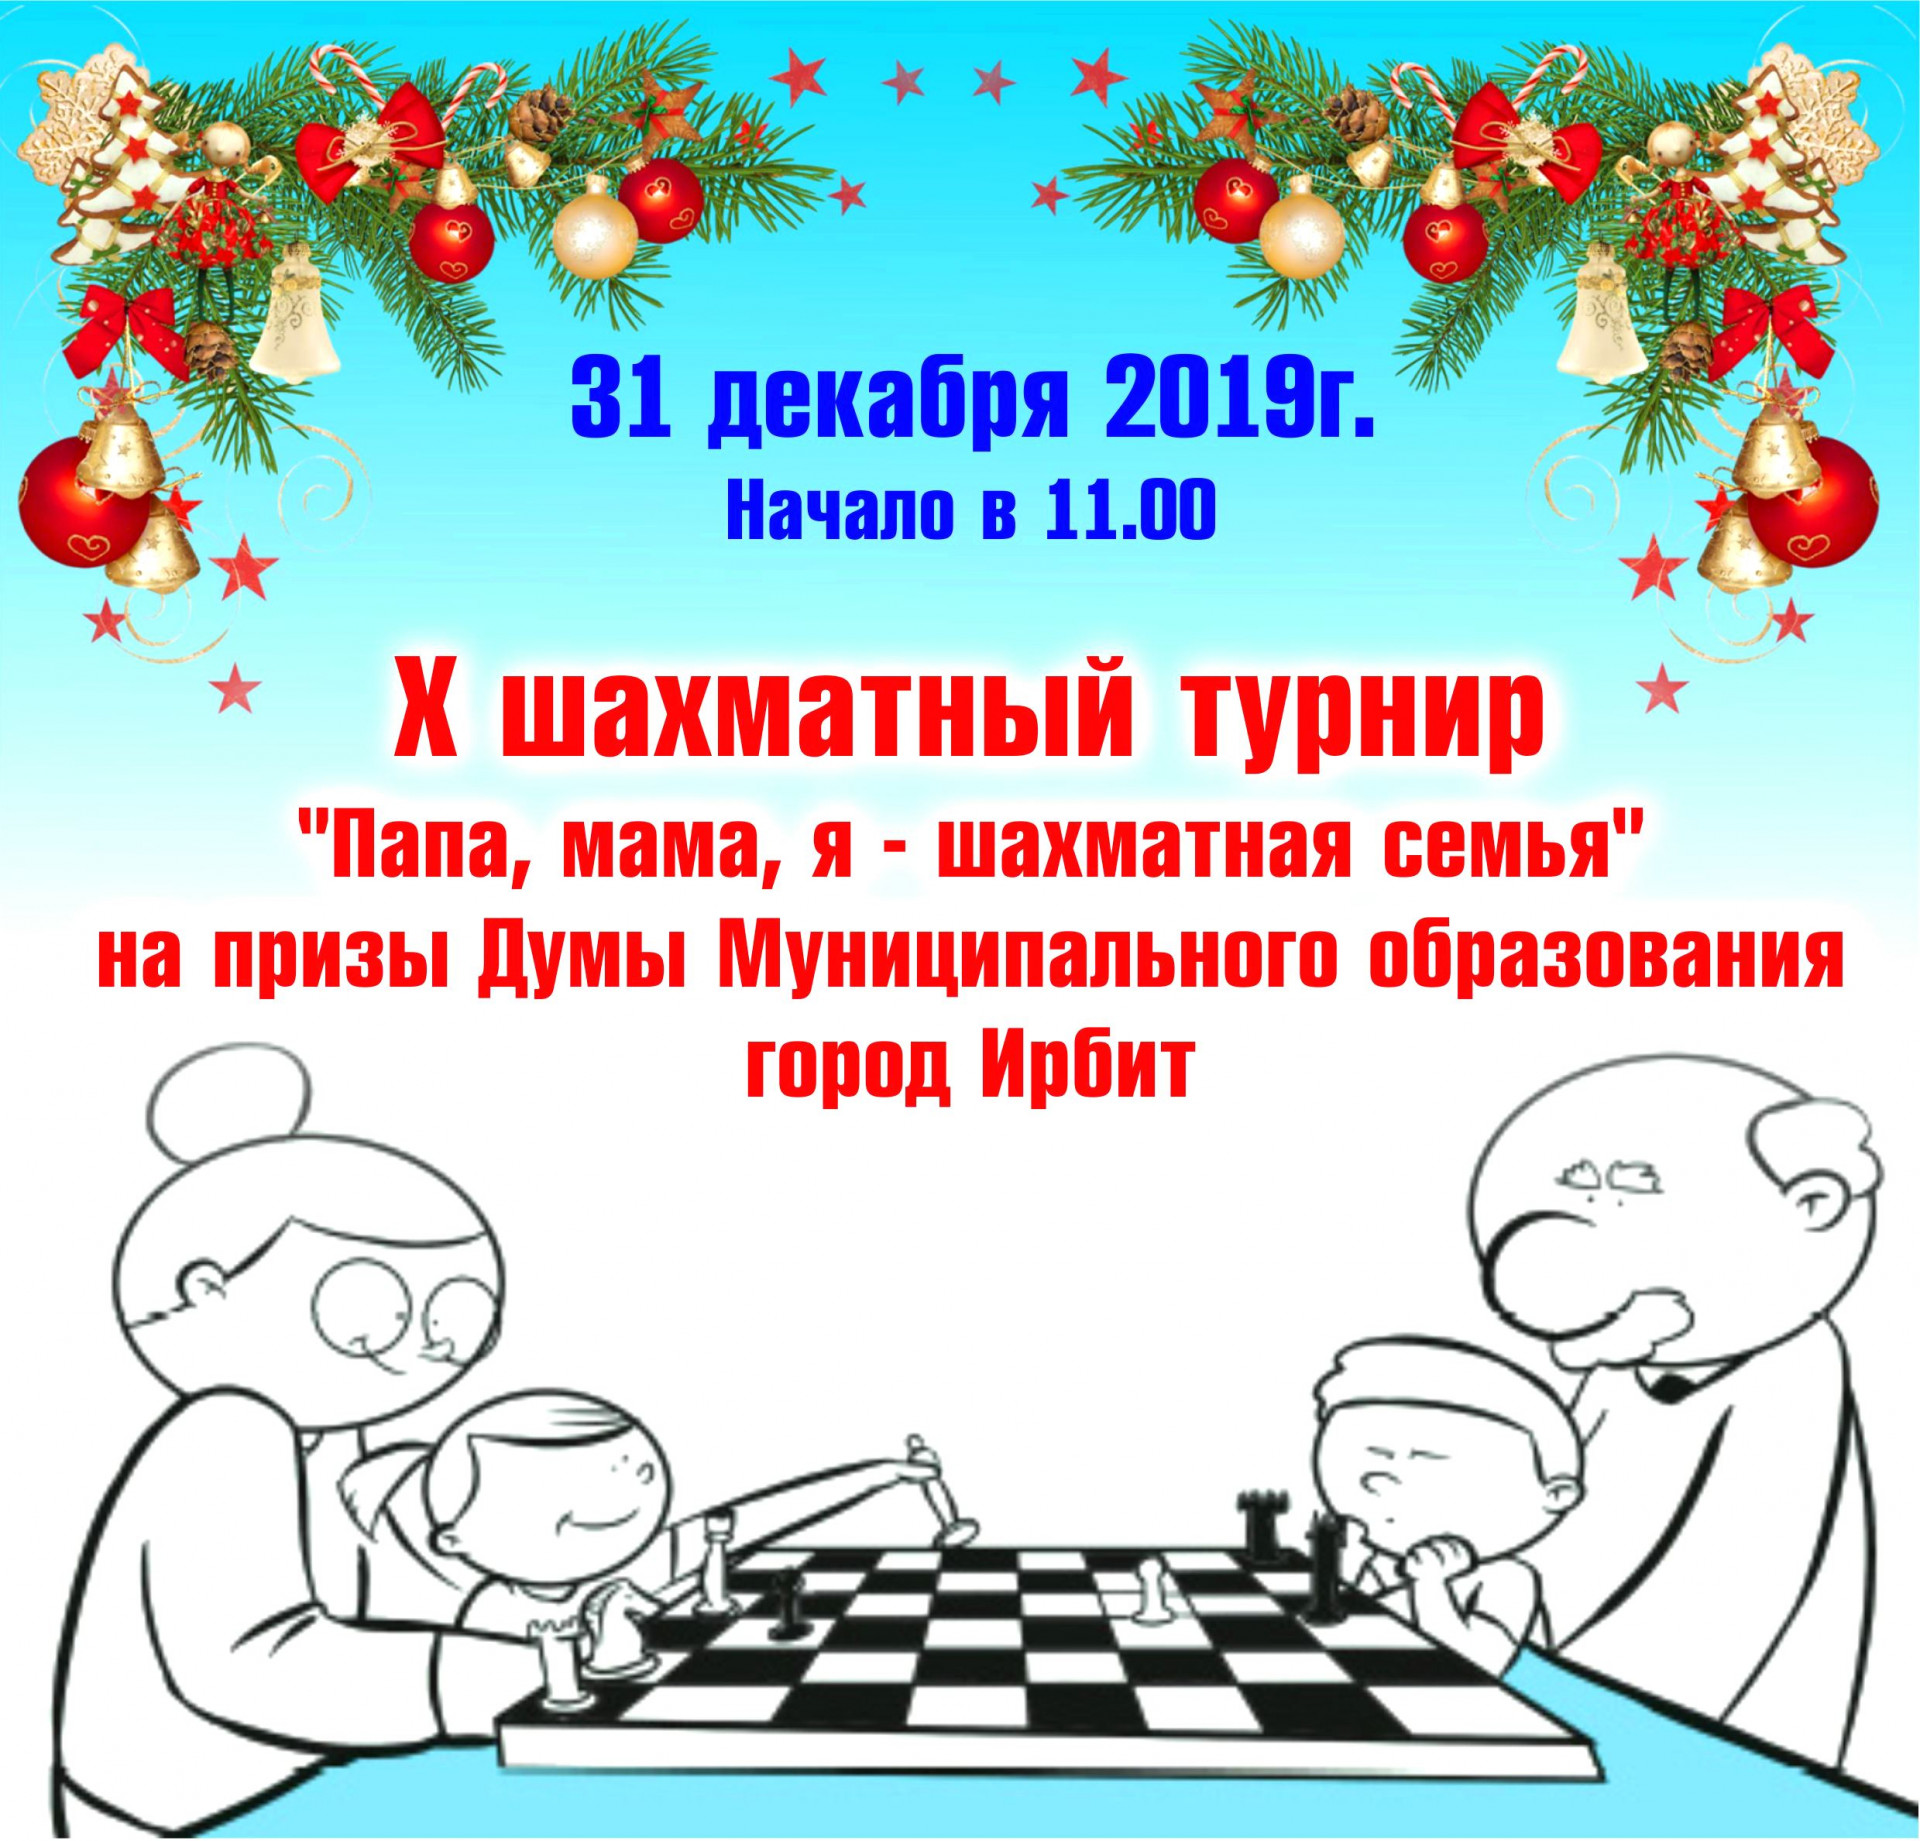 X шахматный турнир "Папа, мама, я - шахматная семья"